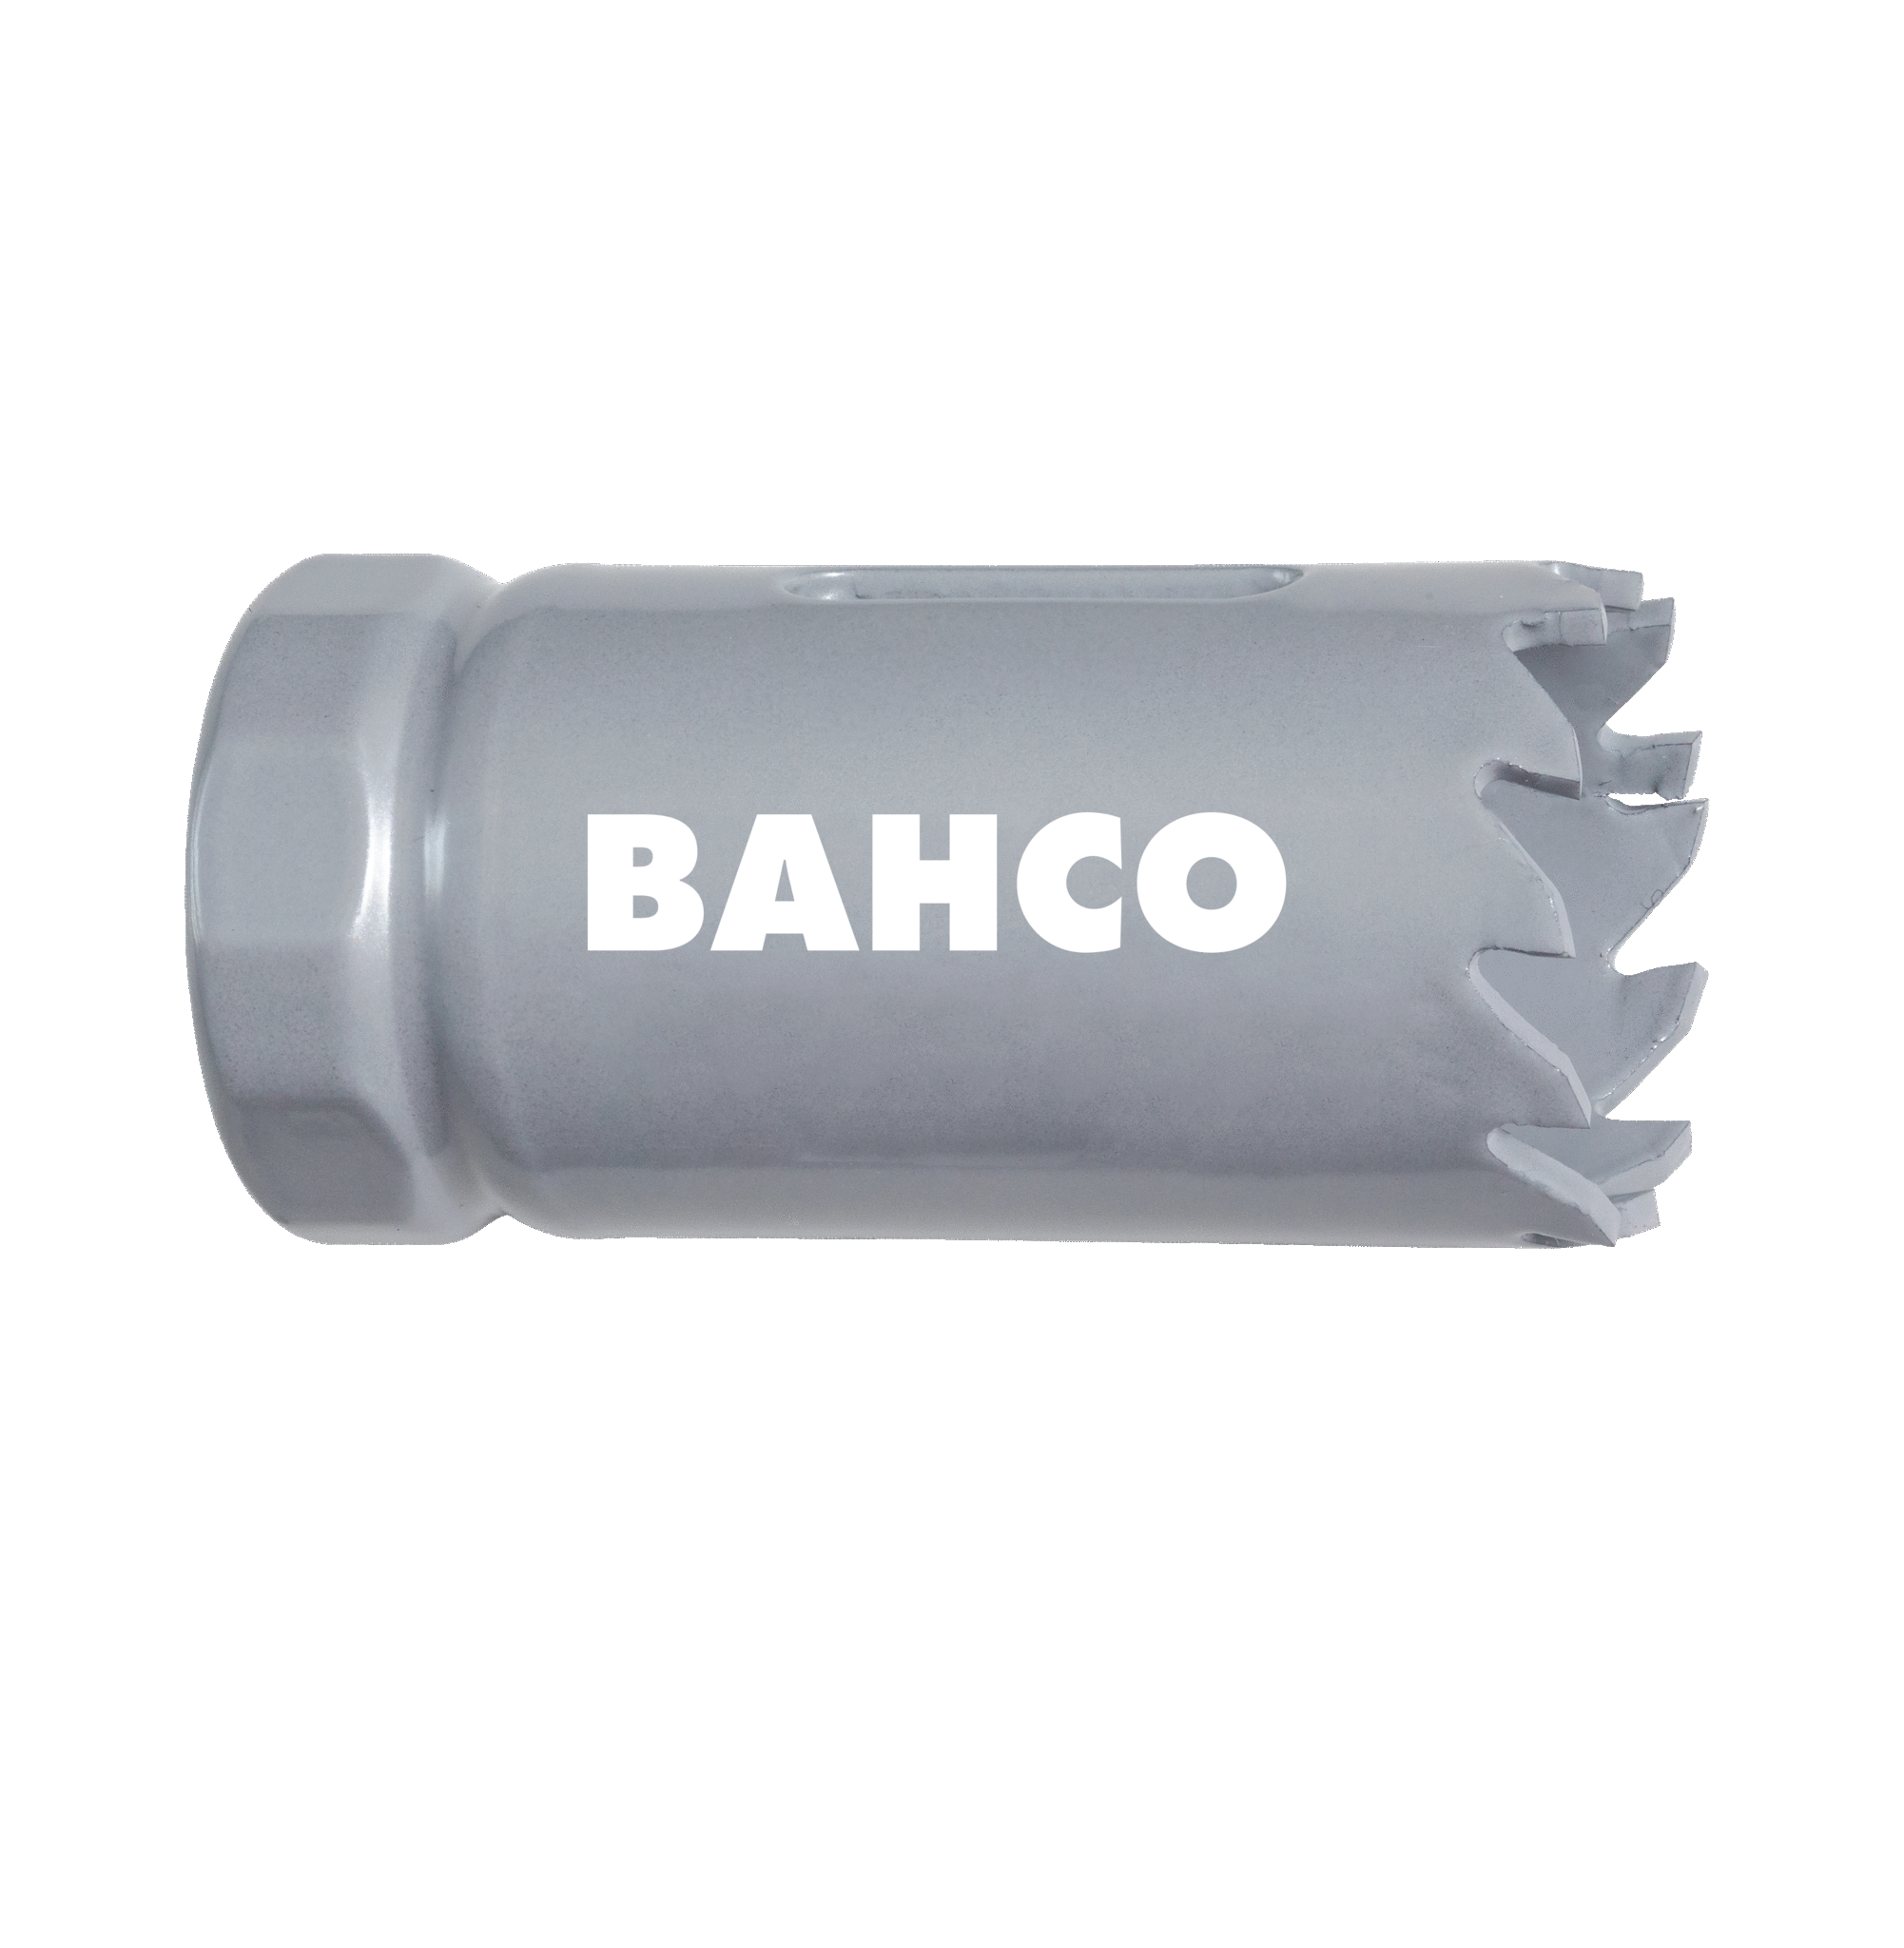 Кольцевые пилы с твердосплавными напайками BAHCO 3832-38